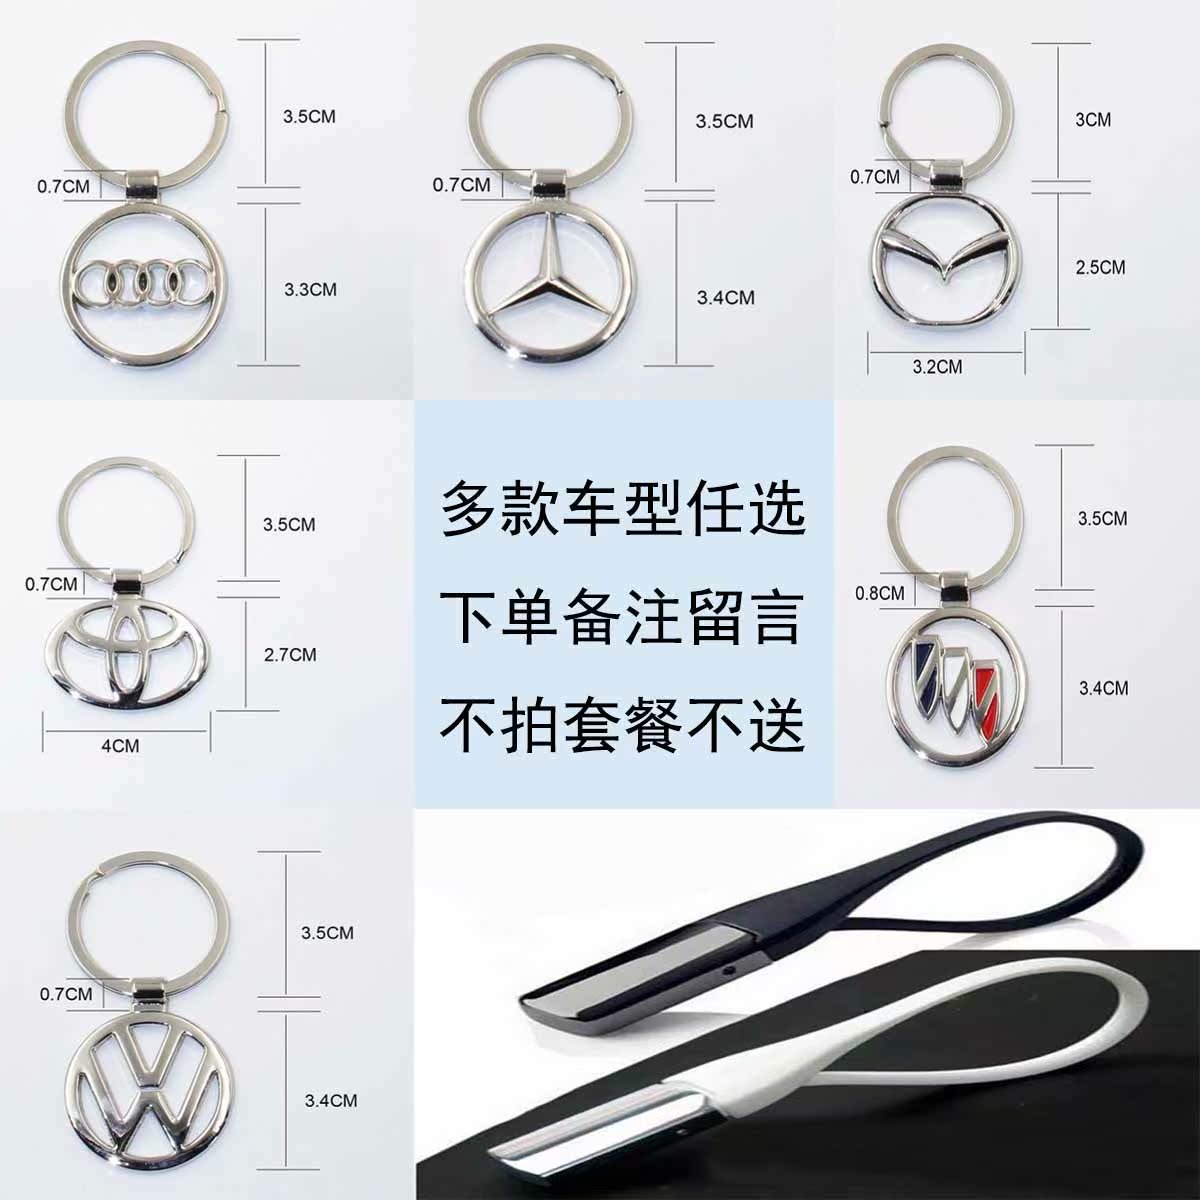 金属镂空车标汽车用品钥匙扣 男士钥匙链 创意钥匙圈 挂件小礼品